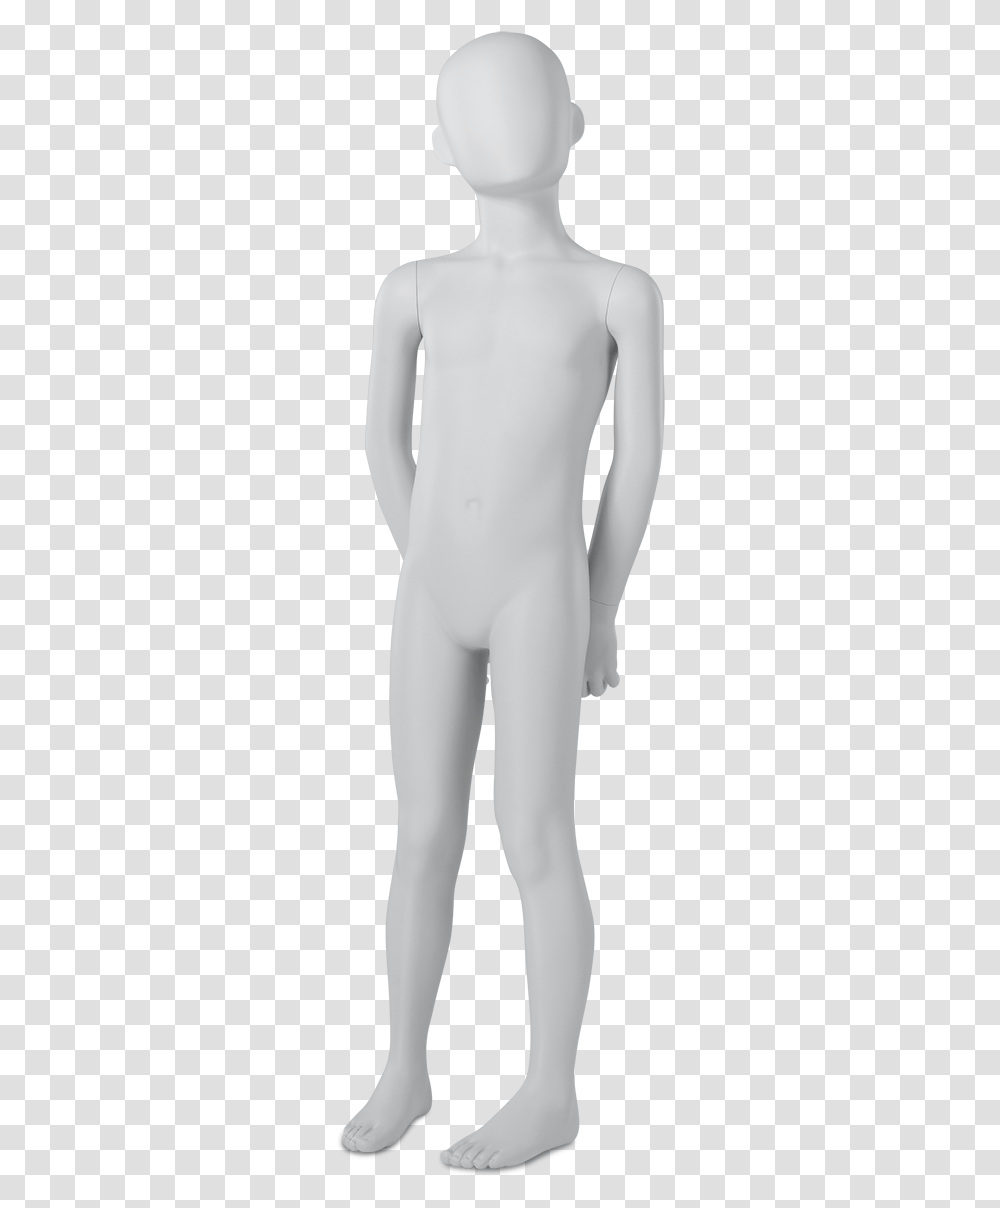 Mannequin, Person, Undershirt, Suit Transparent Png